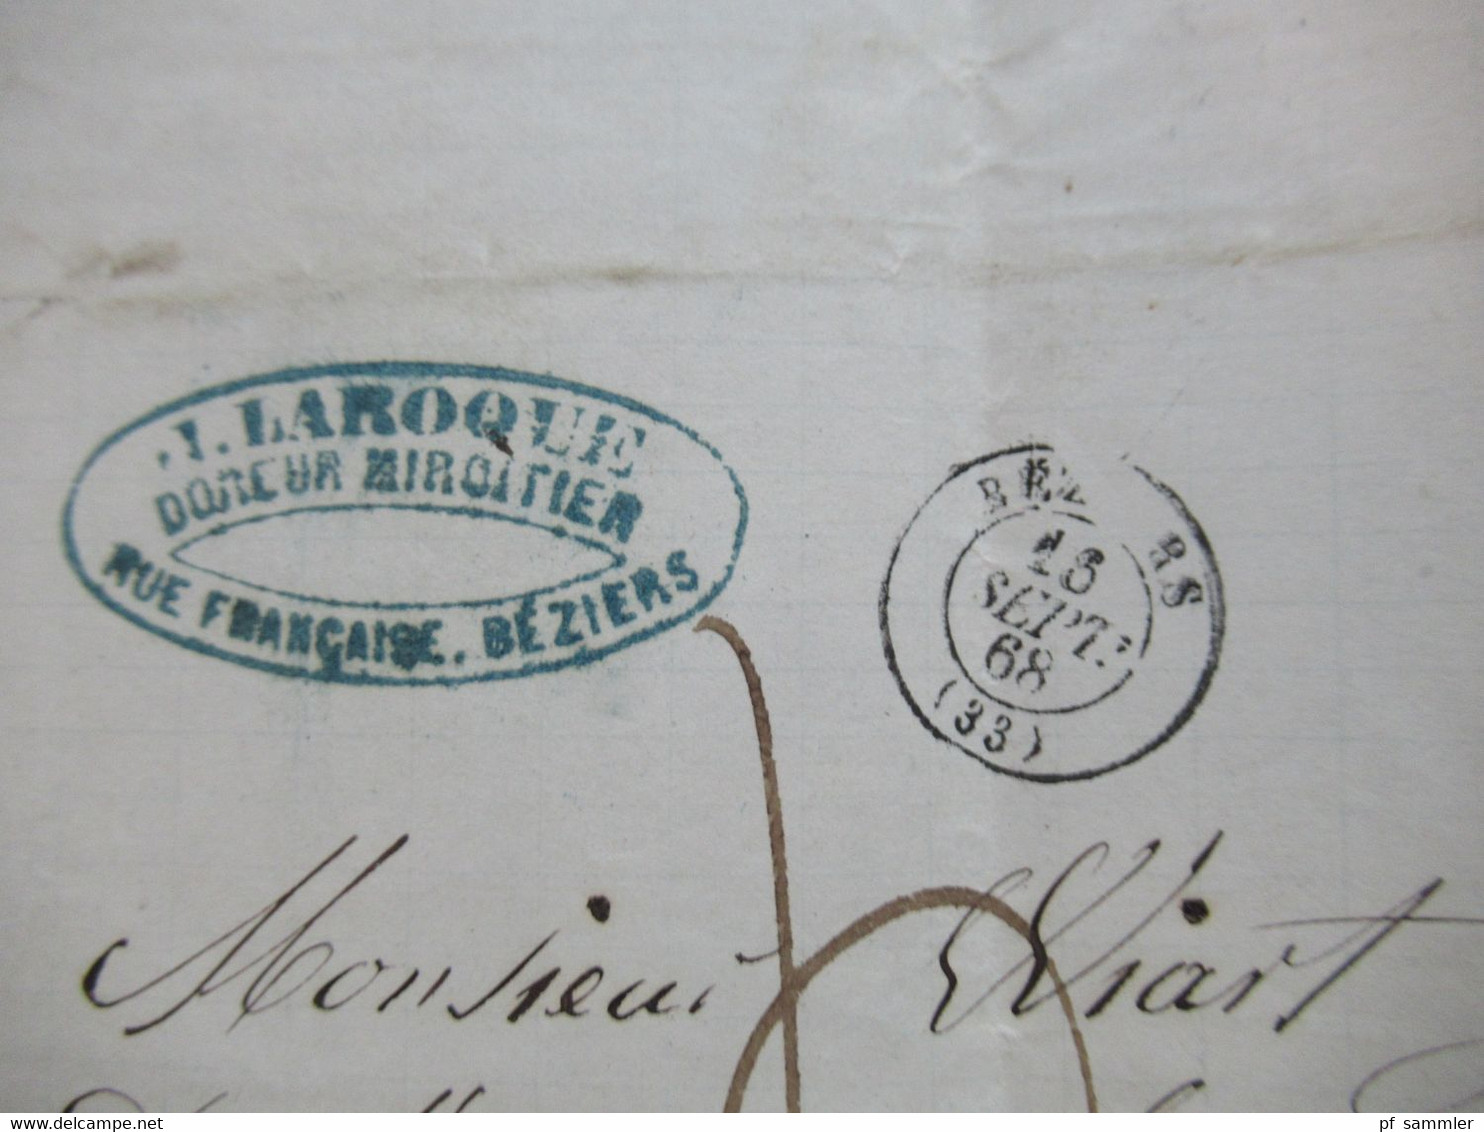 Frankreich 1862 / 68 Napoleon III. Nr.28 Korrespondenz Beziers - Marseille Nummernstempel 472 insgesamt 10 Belege / Falt